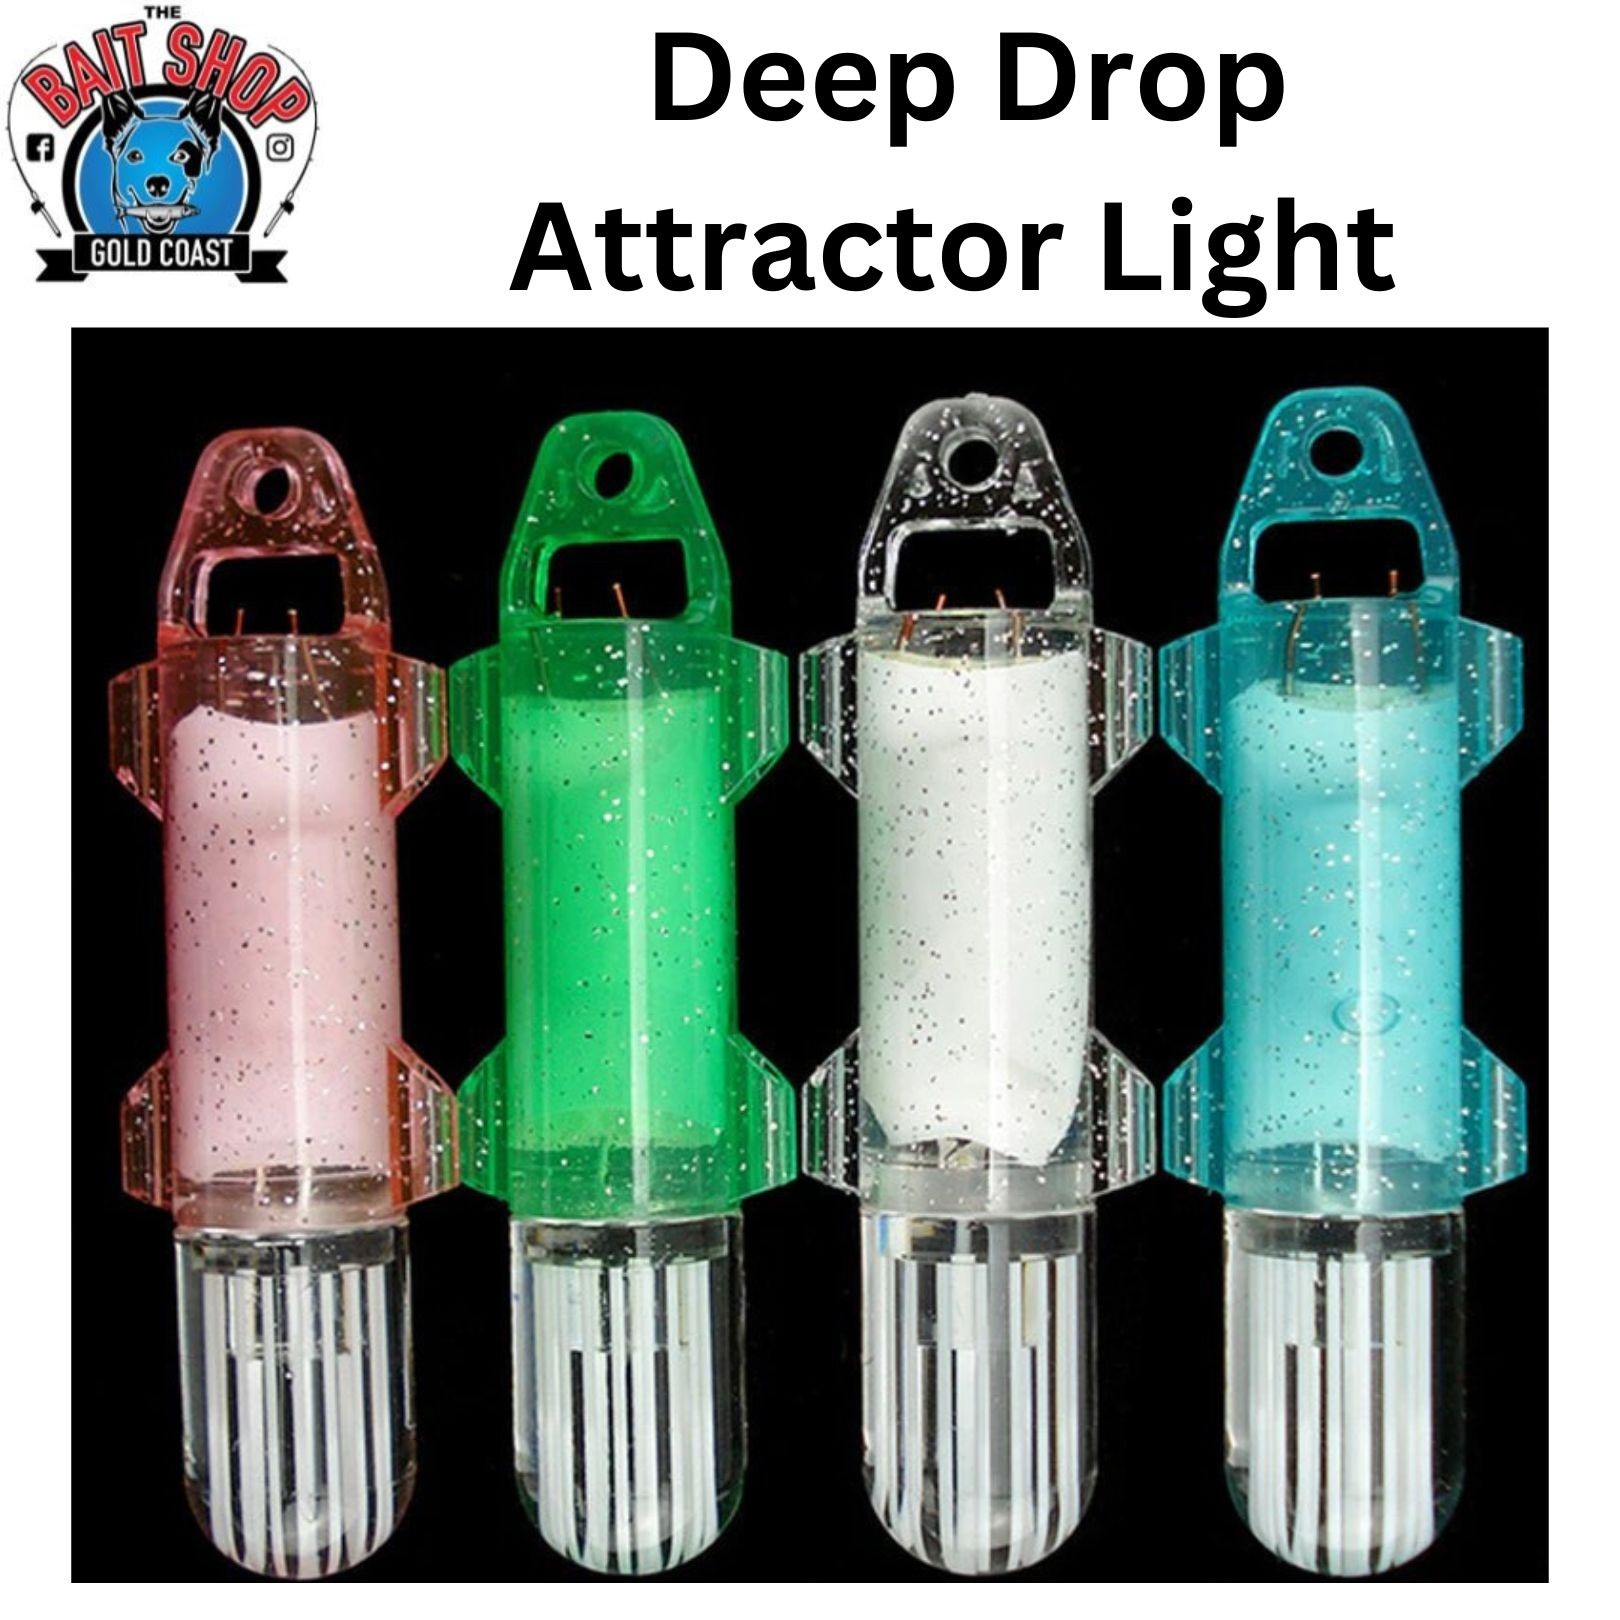 The Bait Shop Deep Drop Fish Attractor Light - The Bait Shop Gold Coast